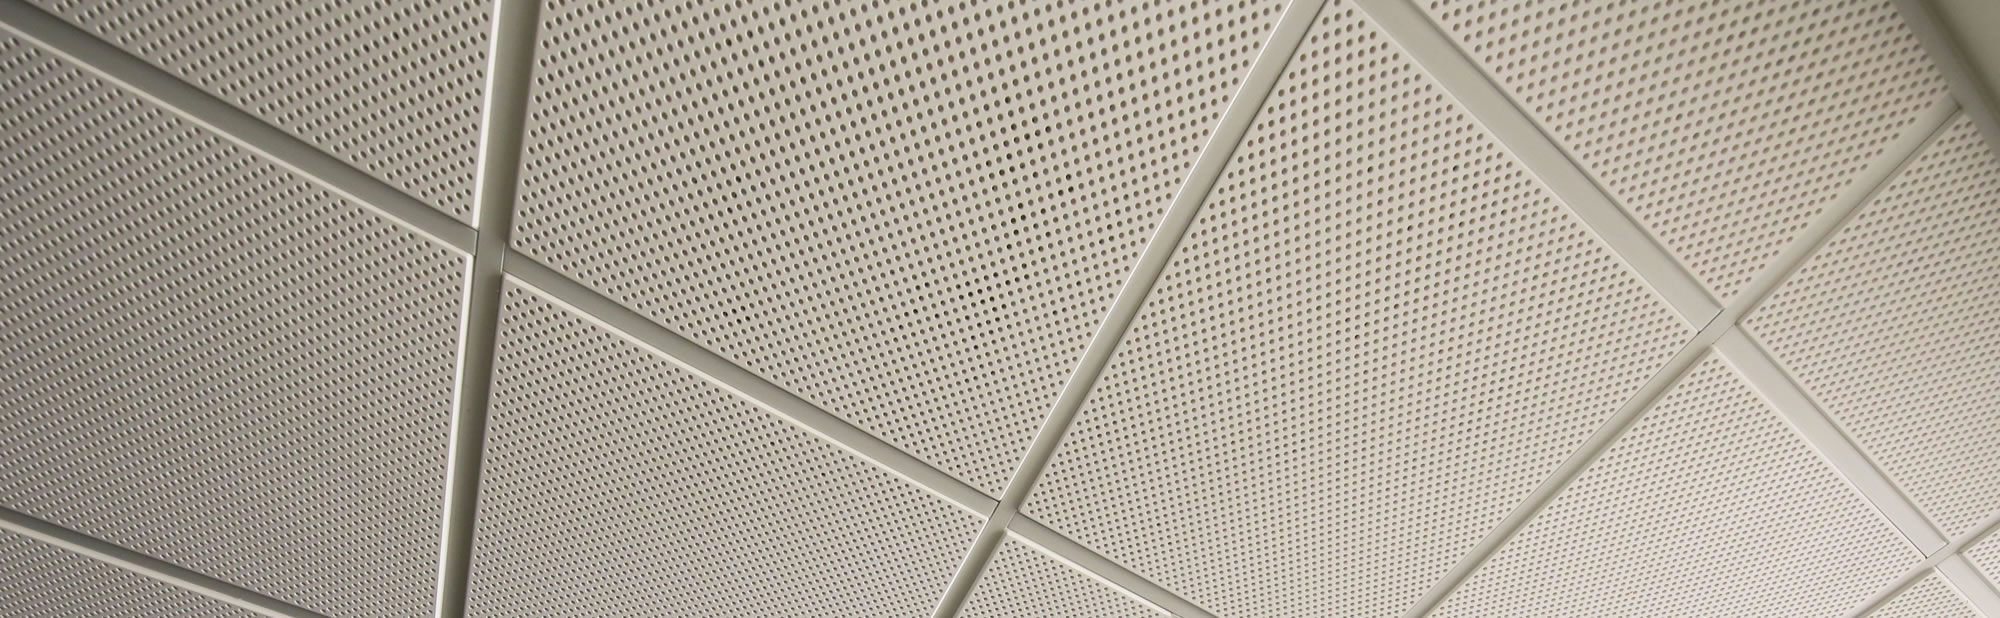 Acoustics Ceiling Tiles for Etihad Stadium